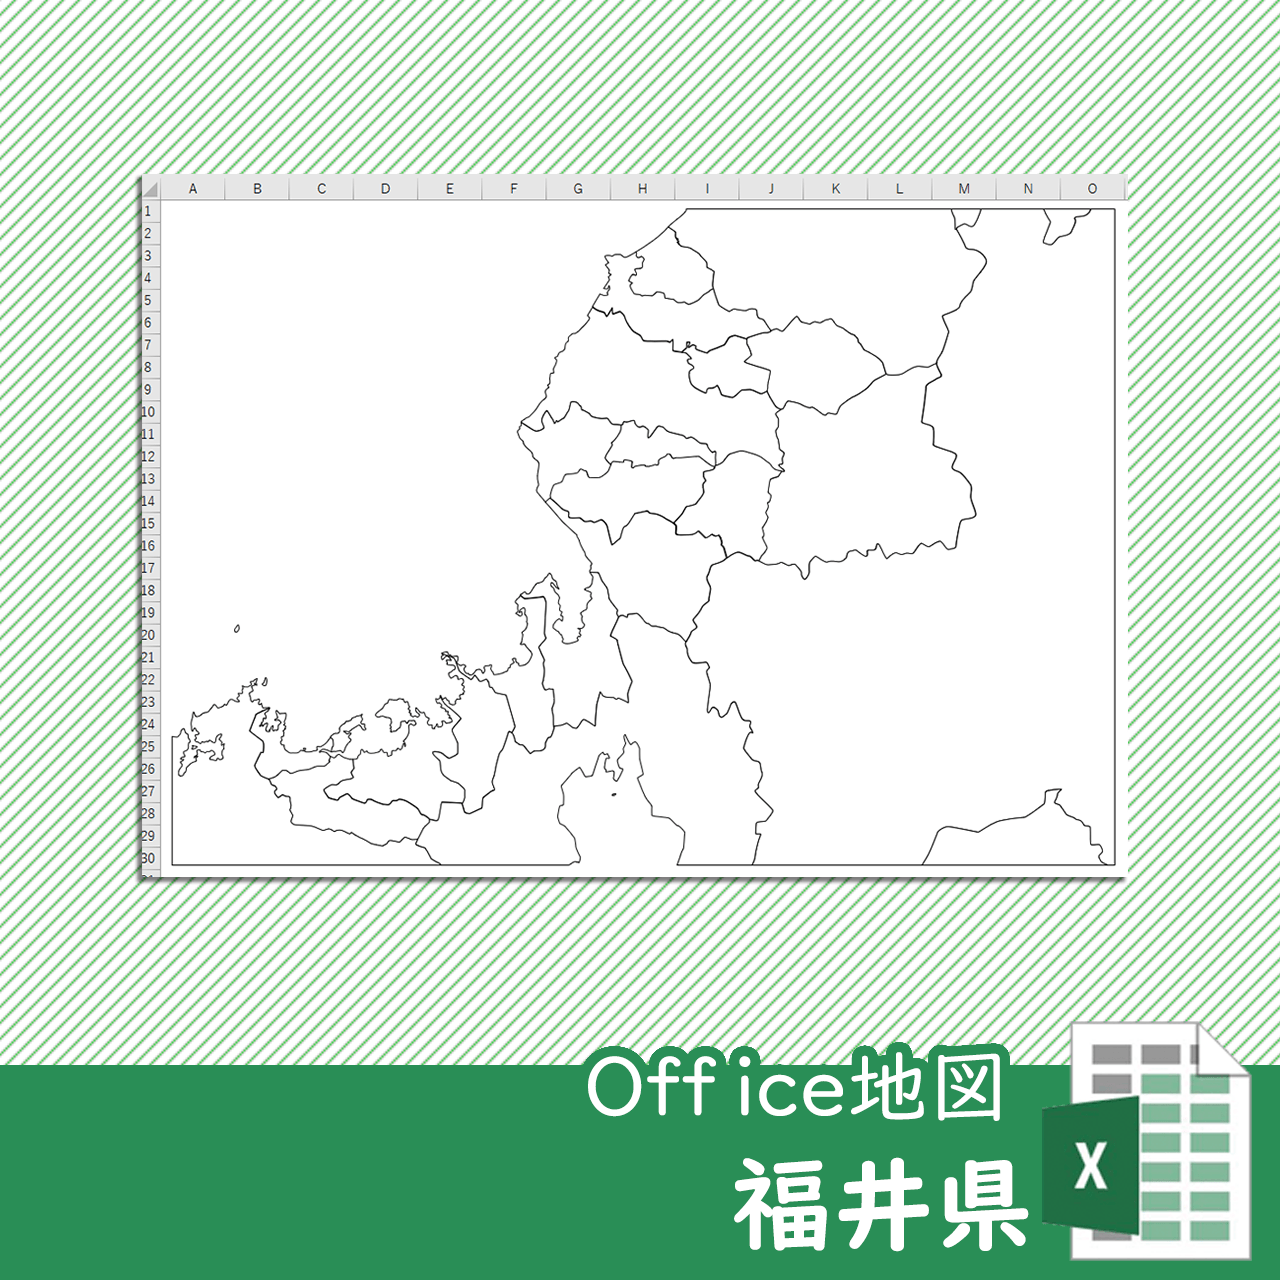 福井県のOffice地図のサムネイル